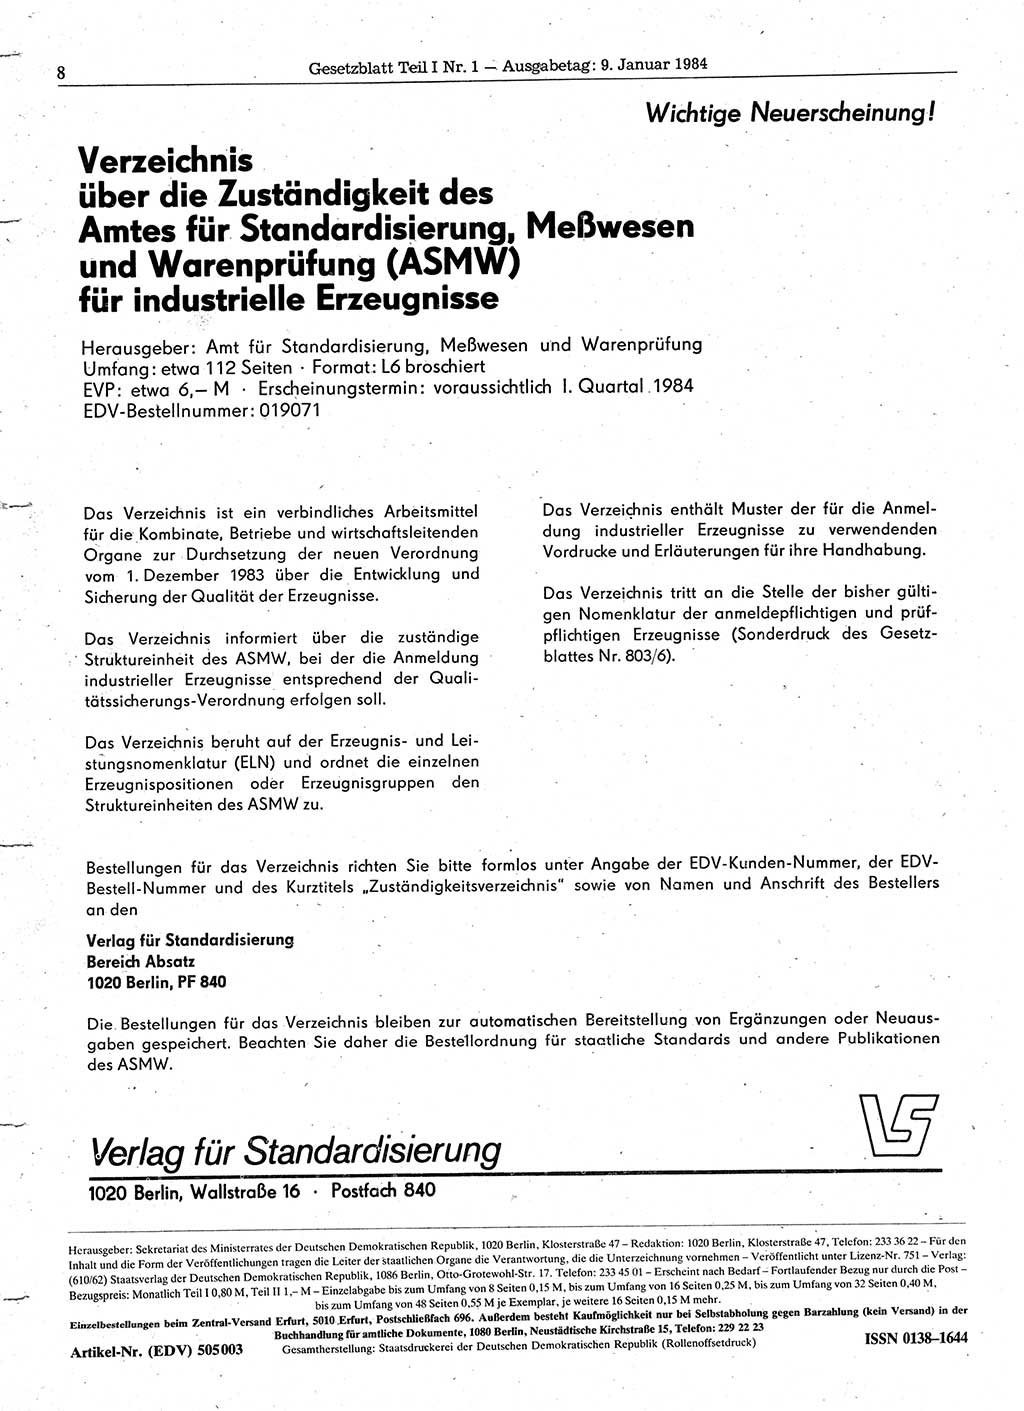 Gesetzblatt (GBl.) der Deutschen Demokratischen Republik (DDR) Teil Ⅰ 1984, Seite 8 (GBl. DDR Ⅰ 1984, S. 8)